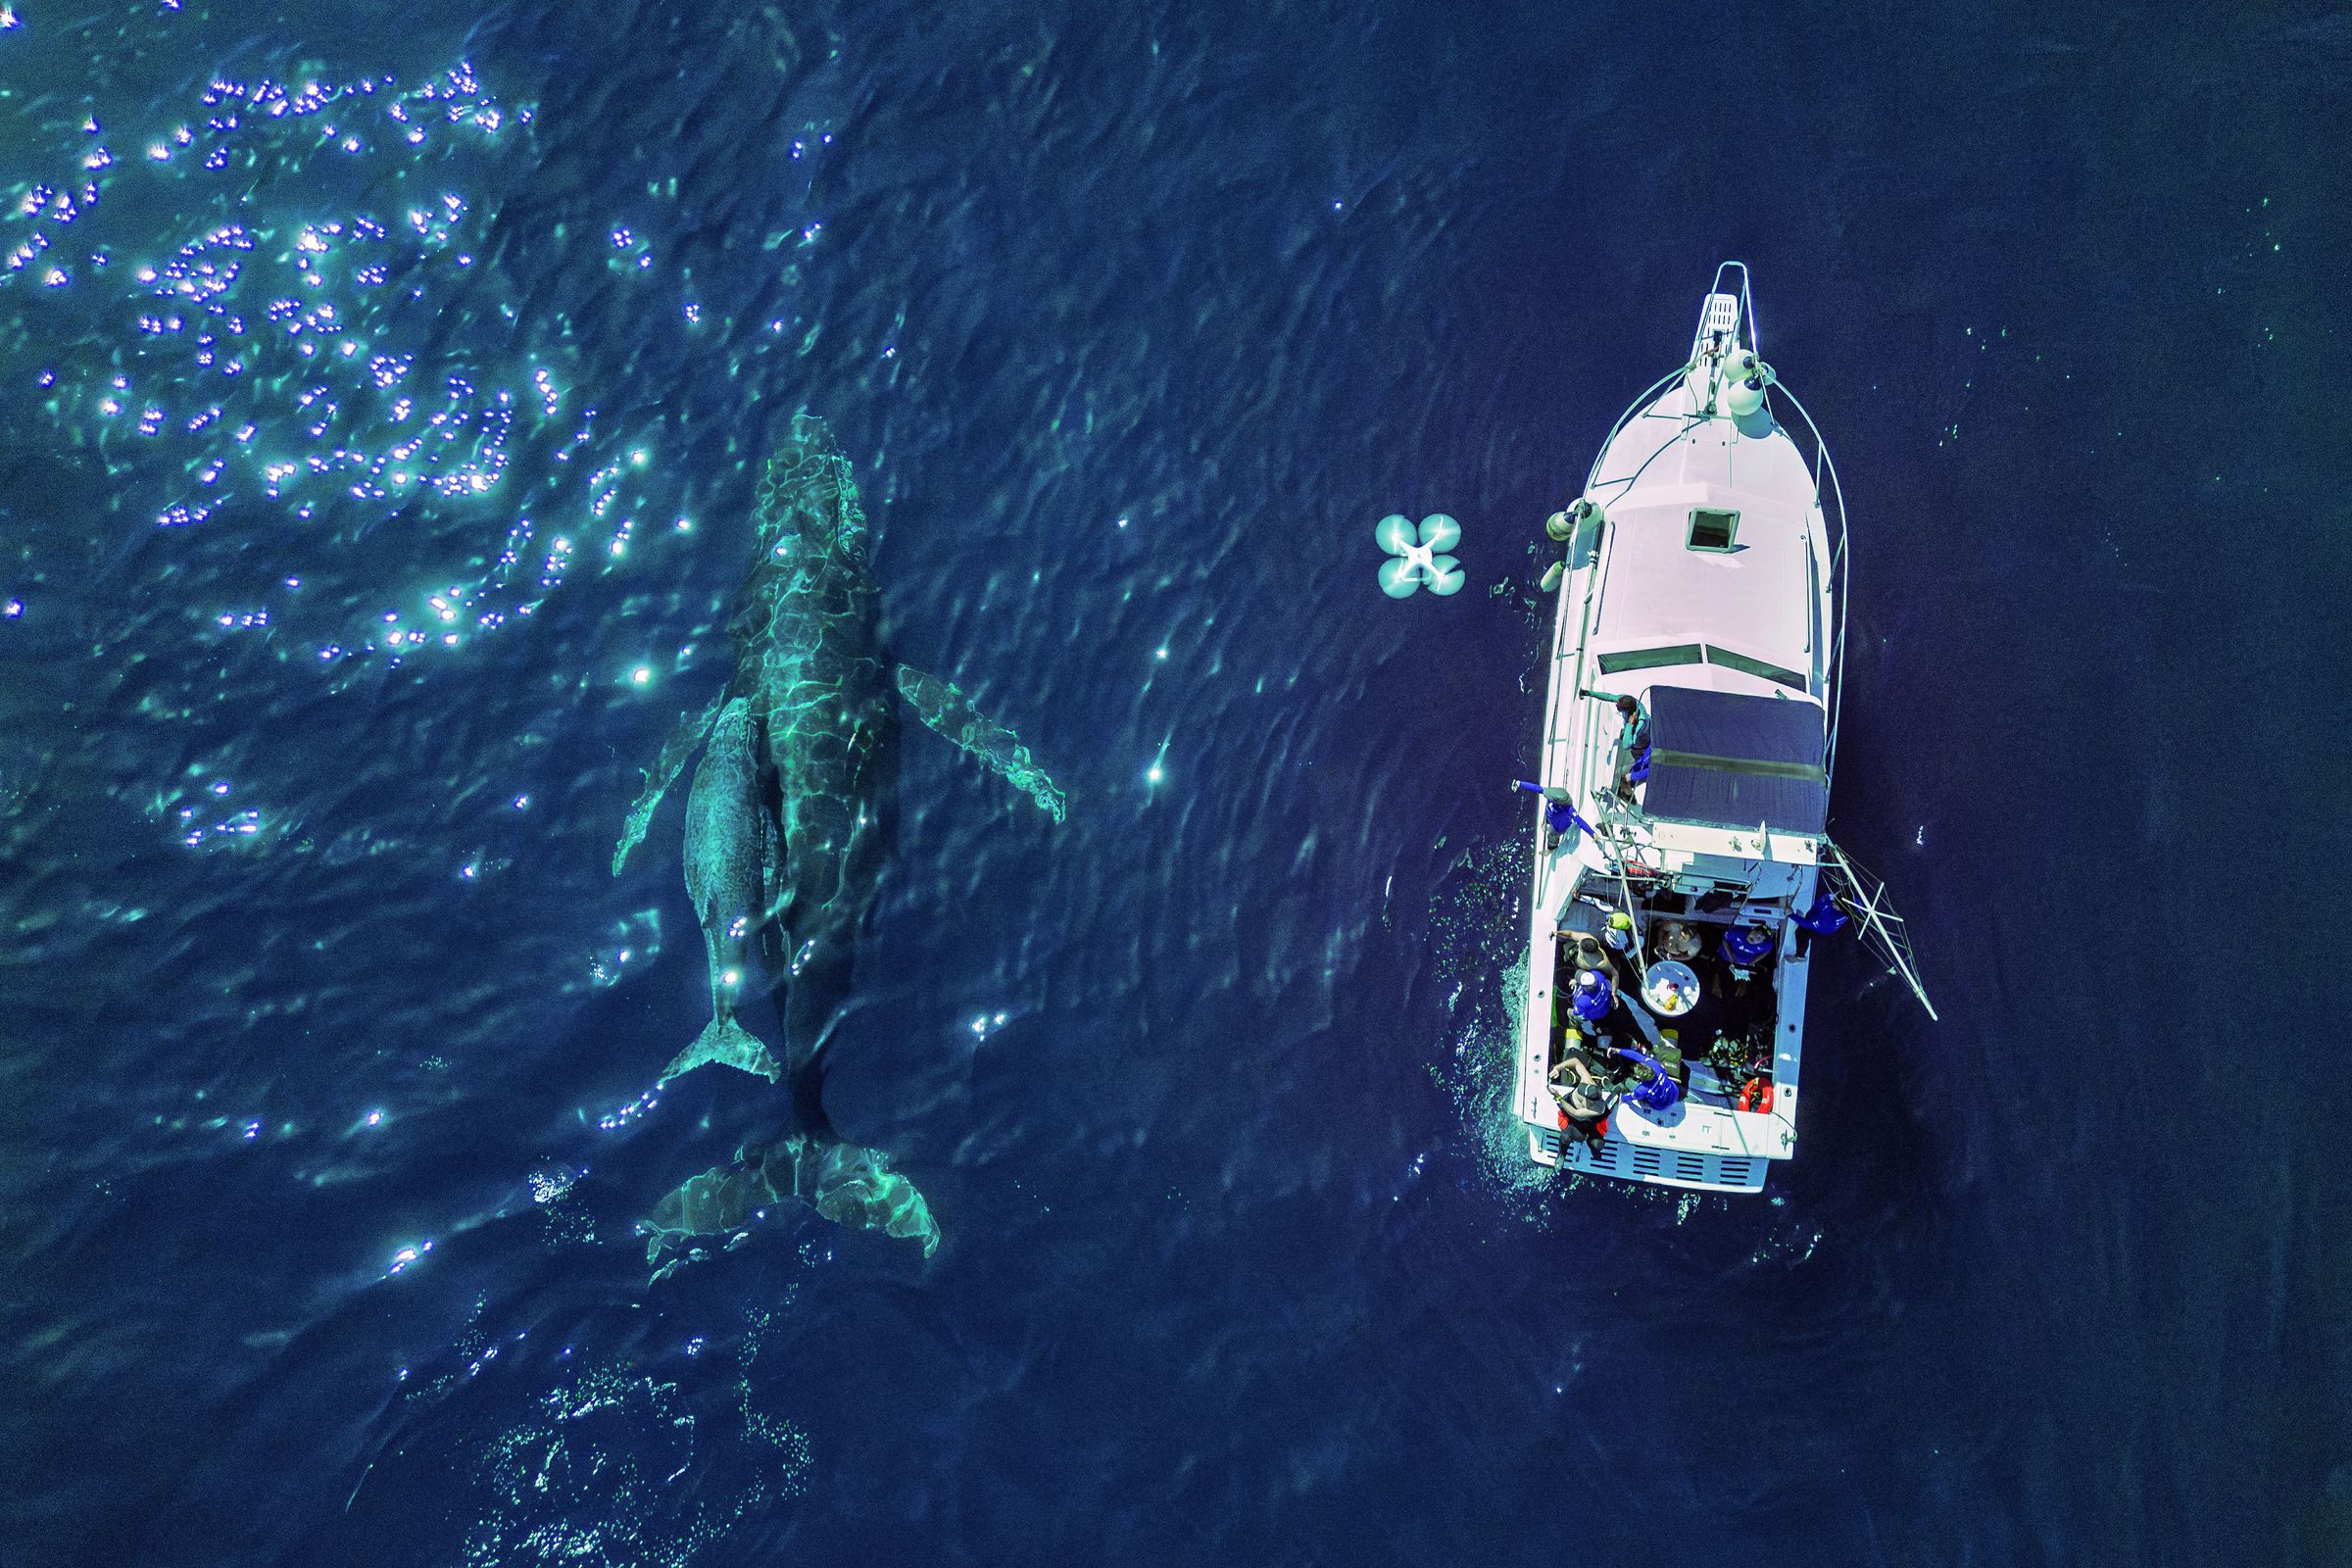 دو نهنگ گوژپشت در آب - یکی کوچک در کنار یک بزرگ - از بالا دیده می شود.  یک قایق در کنار نهنگ ها شناور است.